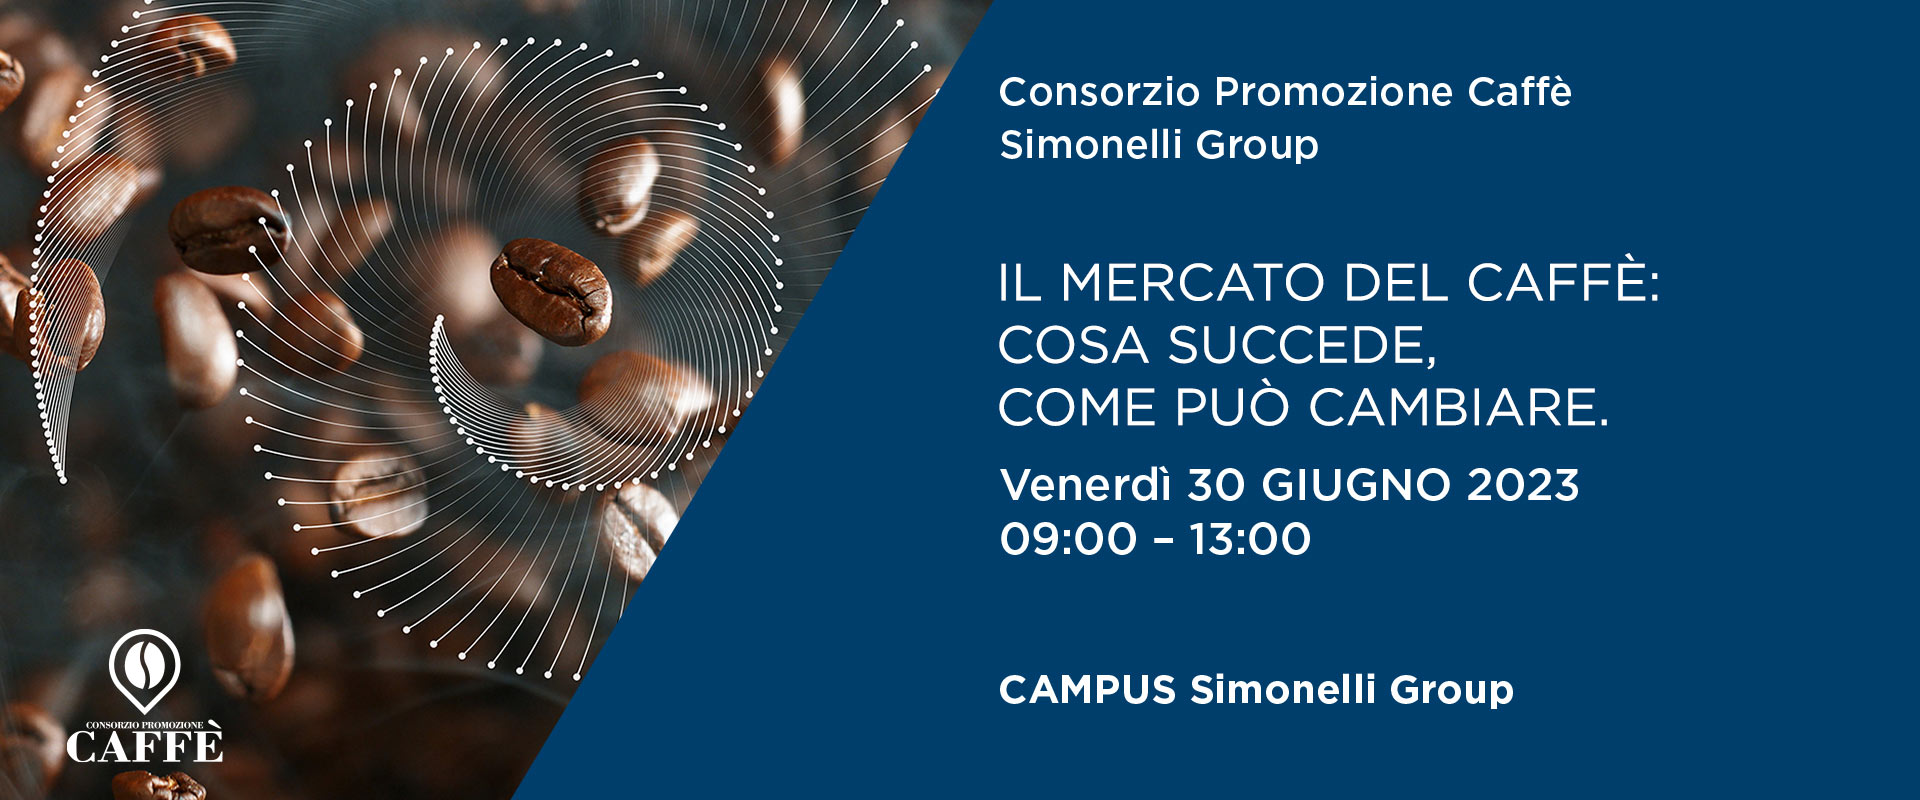 Consorzio Promozione Caffè e Simonelli Group organizzano il convegno “Il Mercato del Caffè: Cosa Succede, Come Può Cambiare”